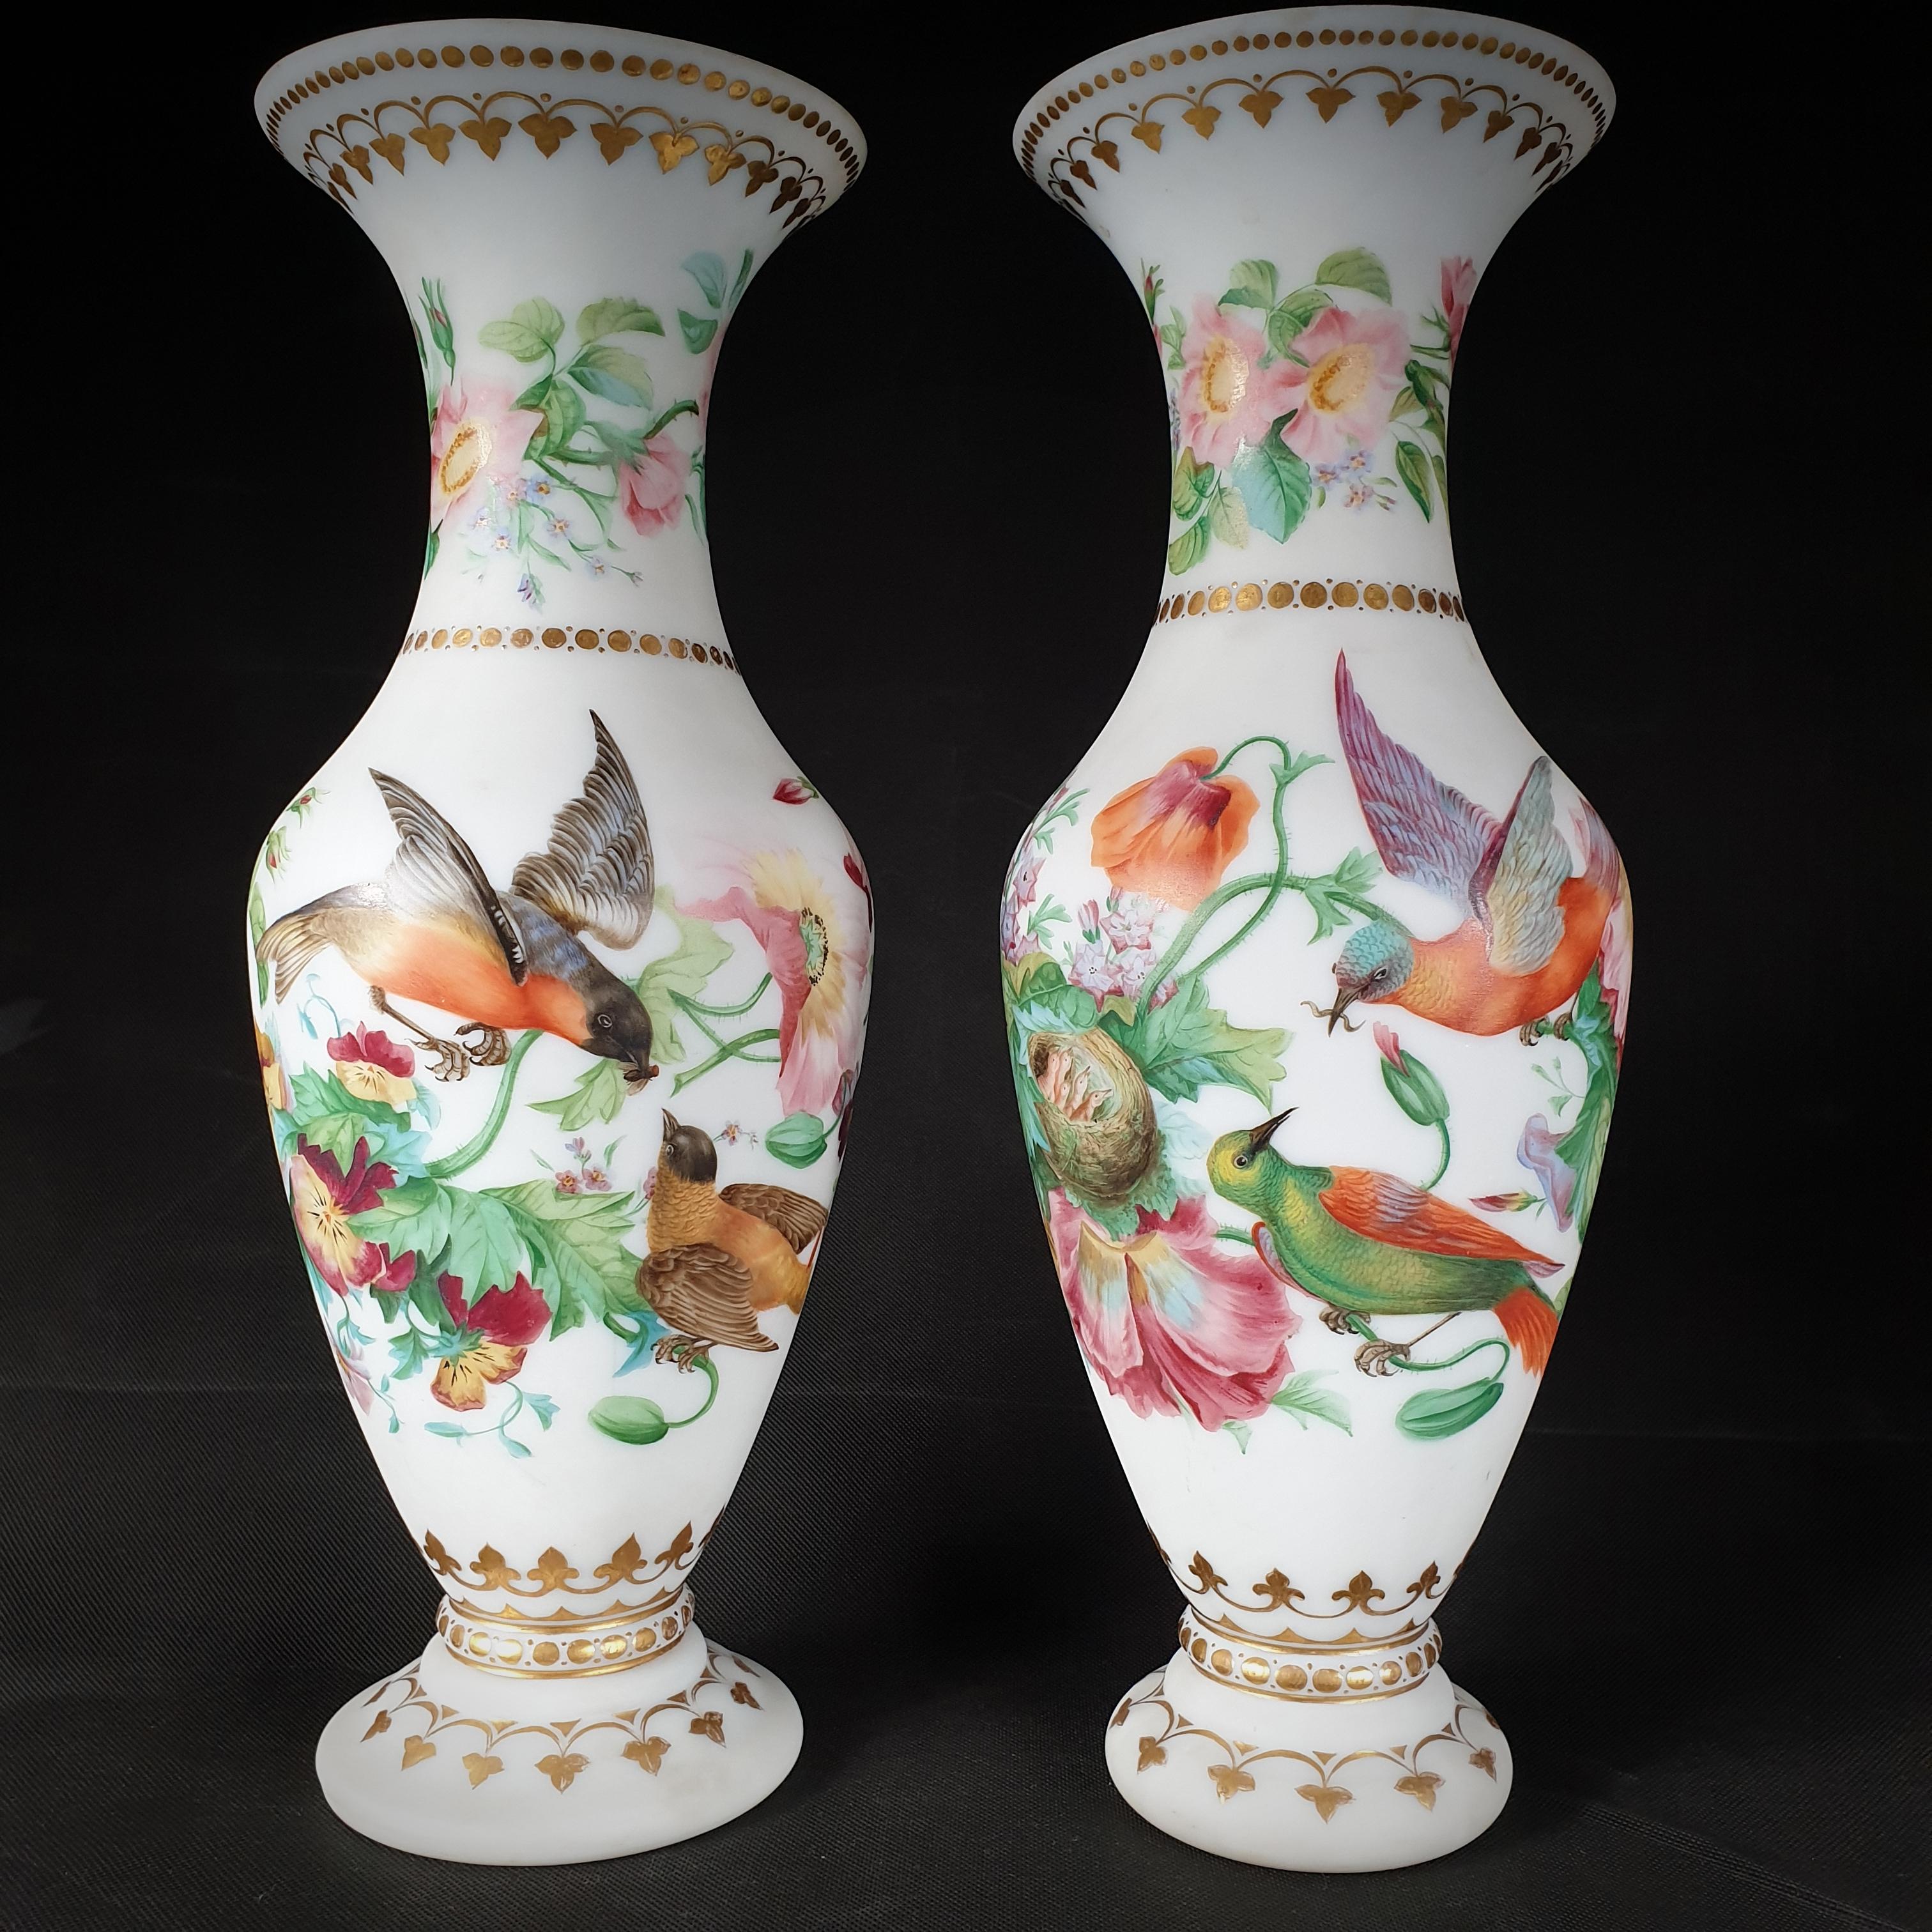 Paar undurchsichtige, trompetenförmige Opalvasen. Wunderschöne handgemalte Blumenmuster in einer Vielzahl von Farben und lebhafte Vögel, die sich um die Küken kümmern und ihr Nest bewachen, schmücken dieses Ehepaar. Die Ecken und Felgen sind mit